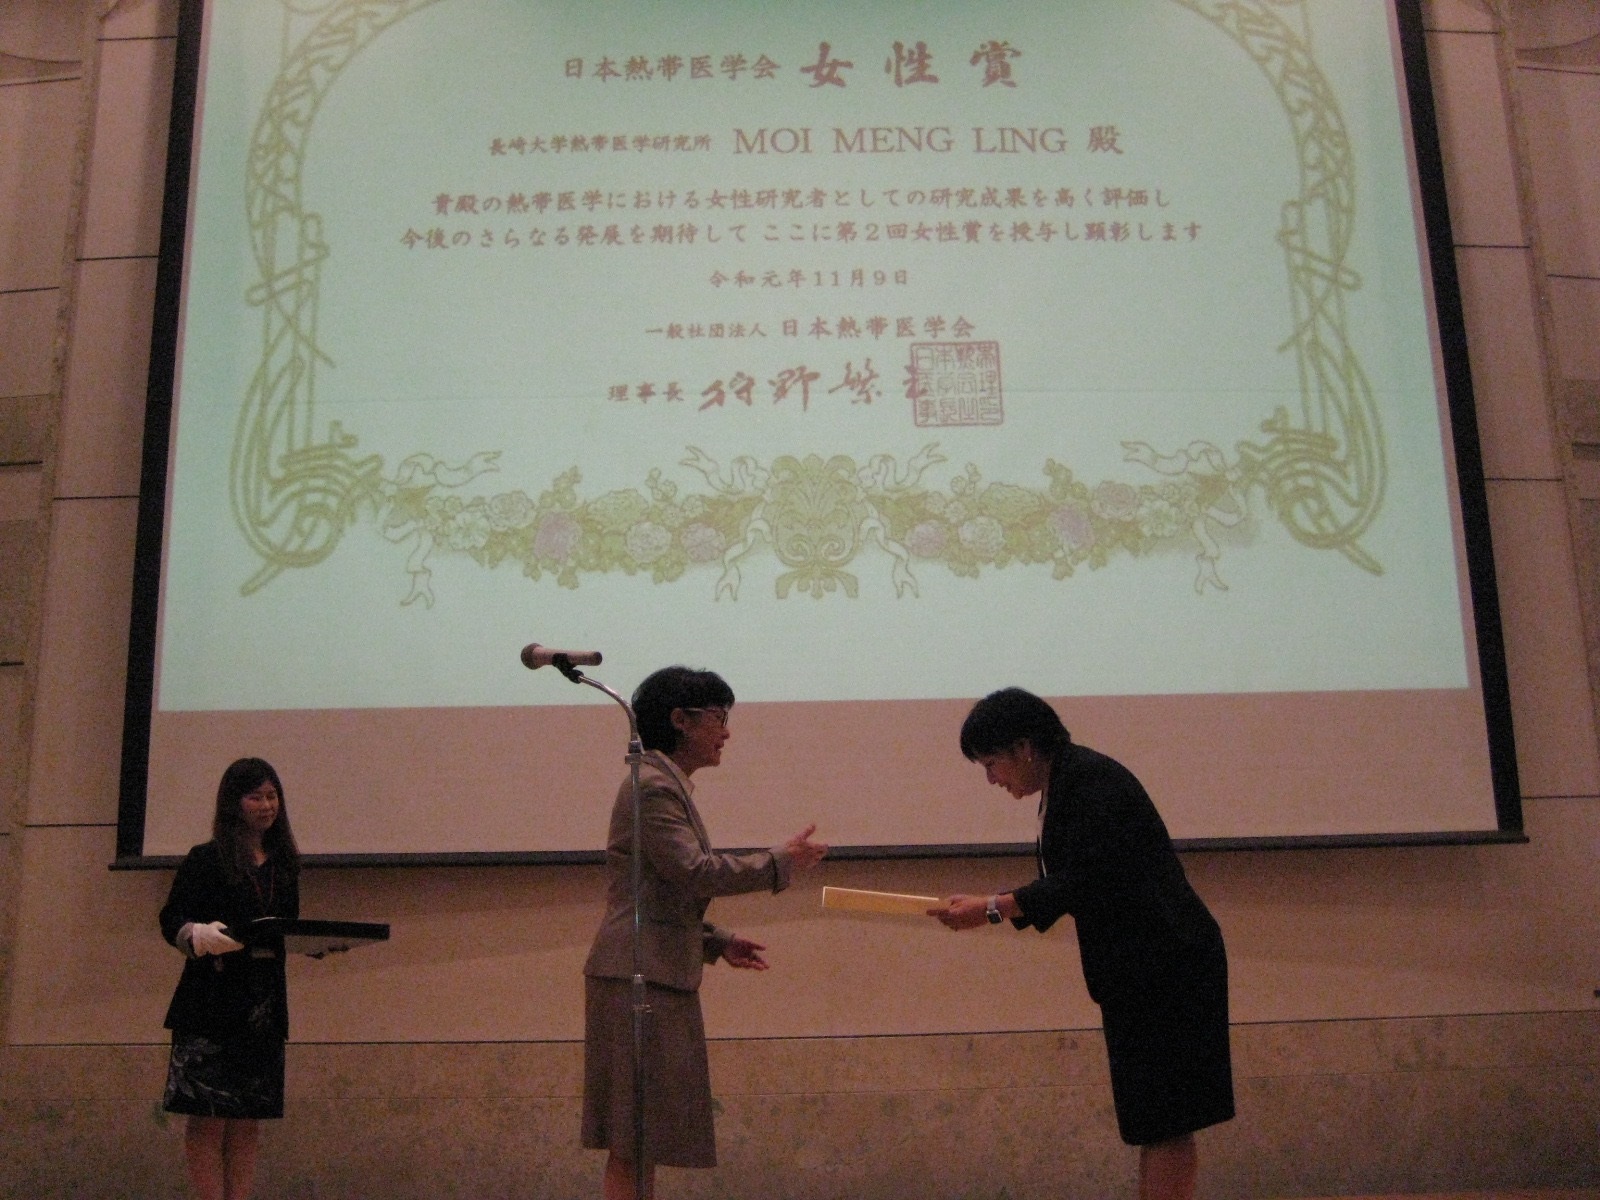 日本熱帯医学会女性賞　受賞式の様子